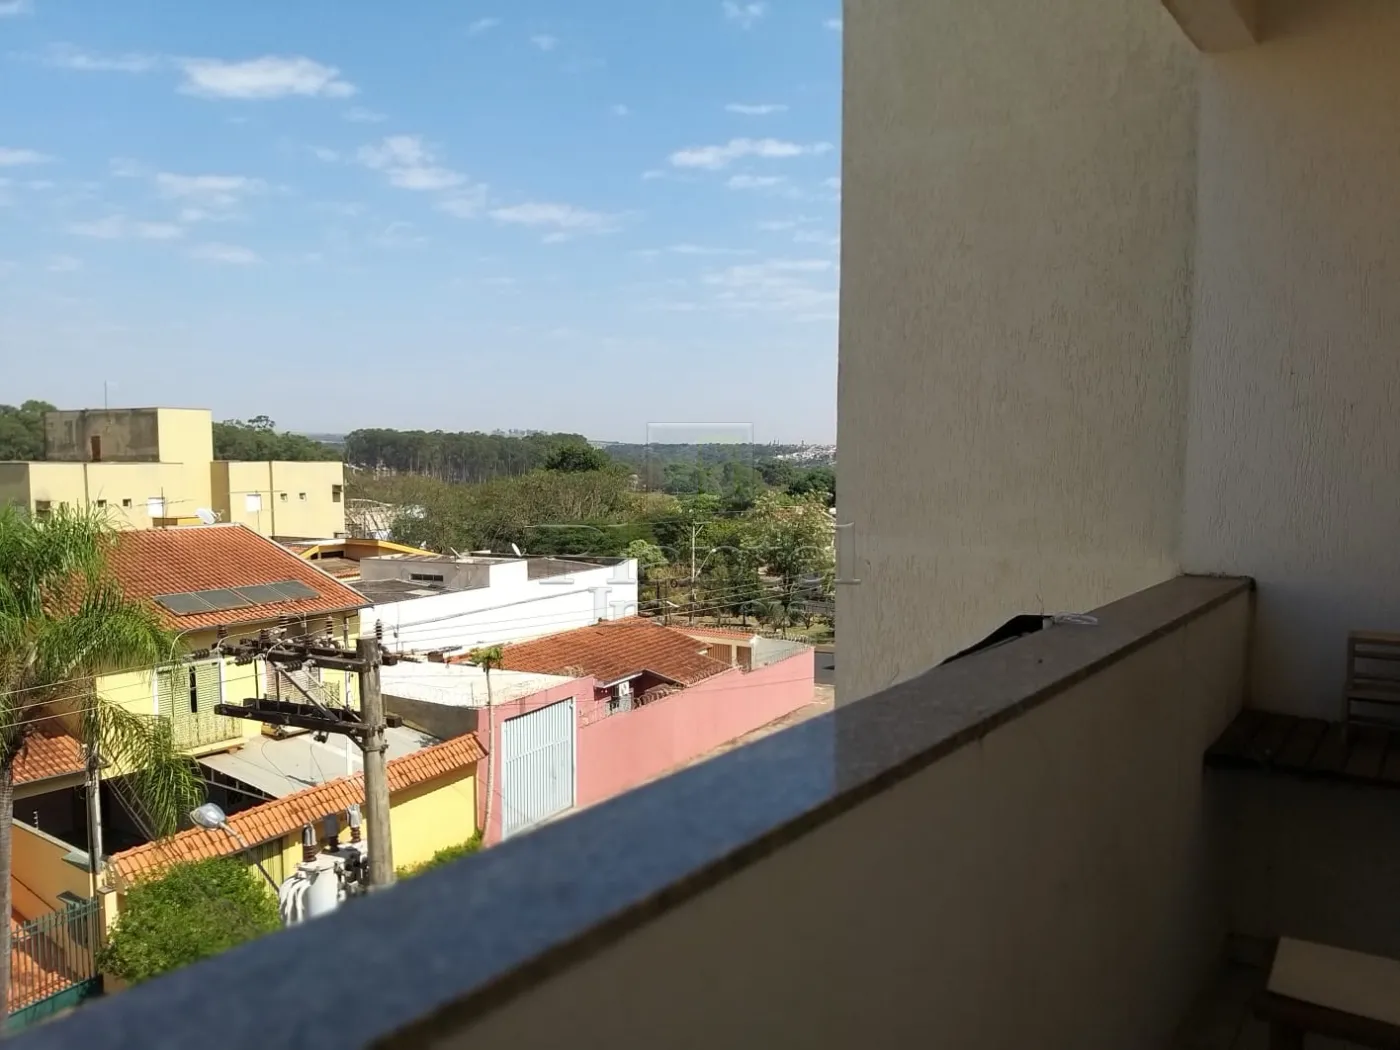 Apartamento - Vila Abranches - Ribeirão Preto